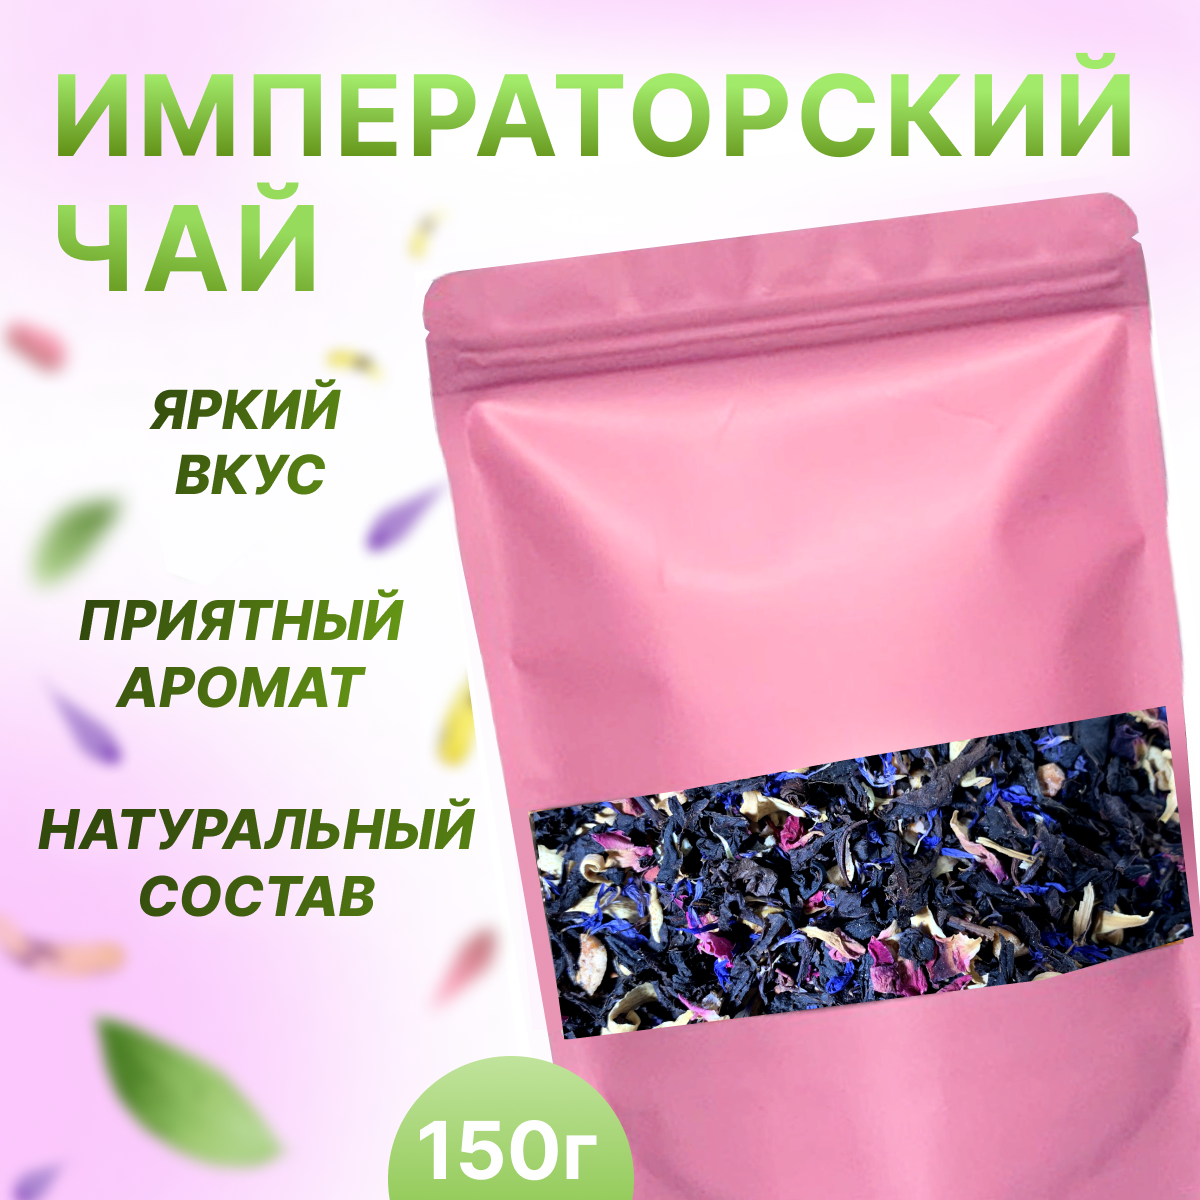 Чай Императорский, НЕ просто ЧАЙ, 150 гр